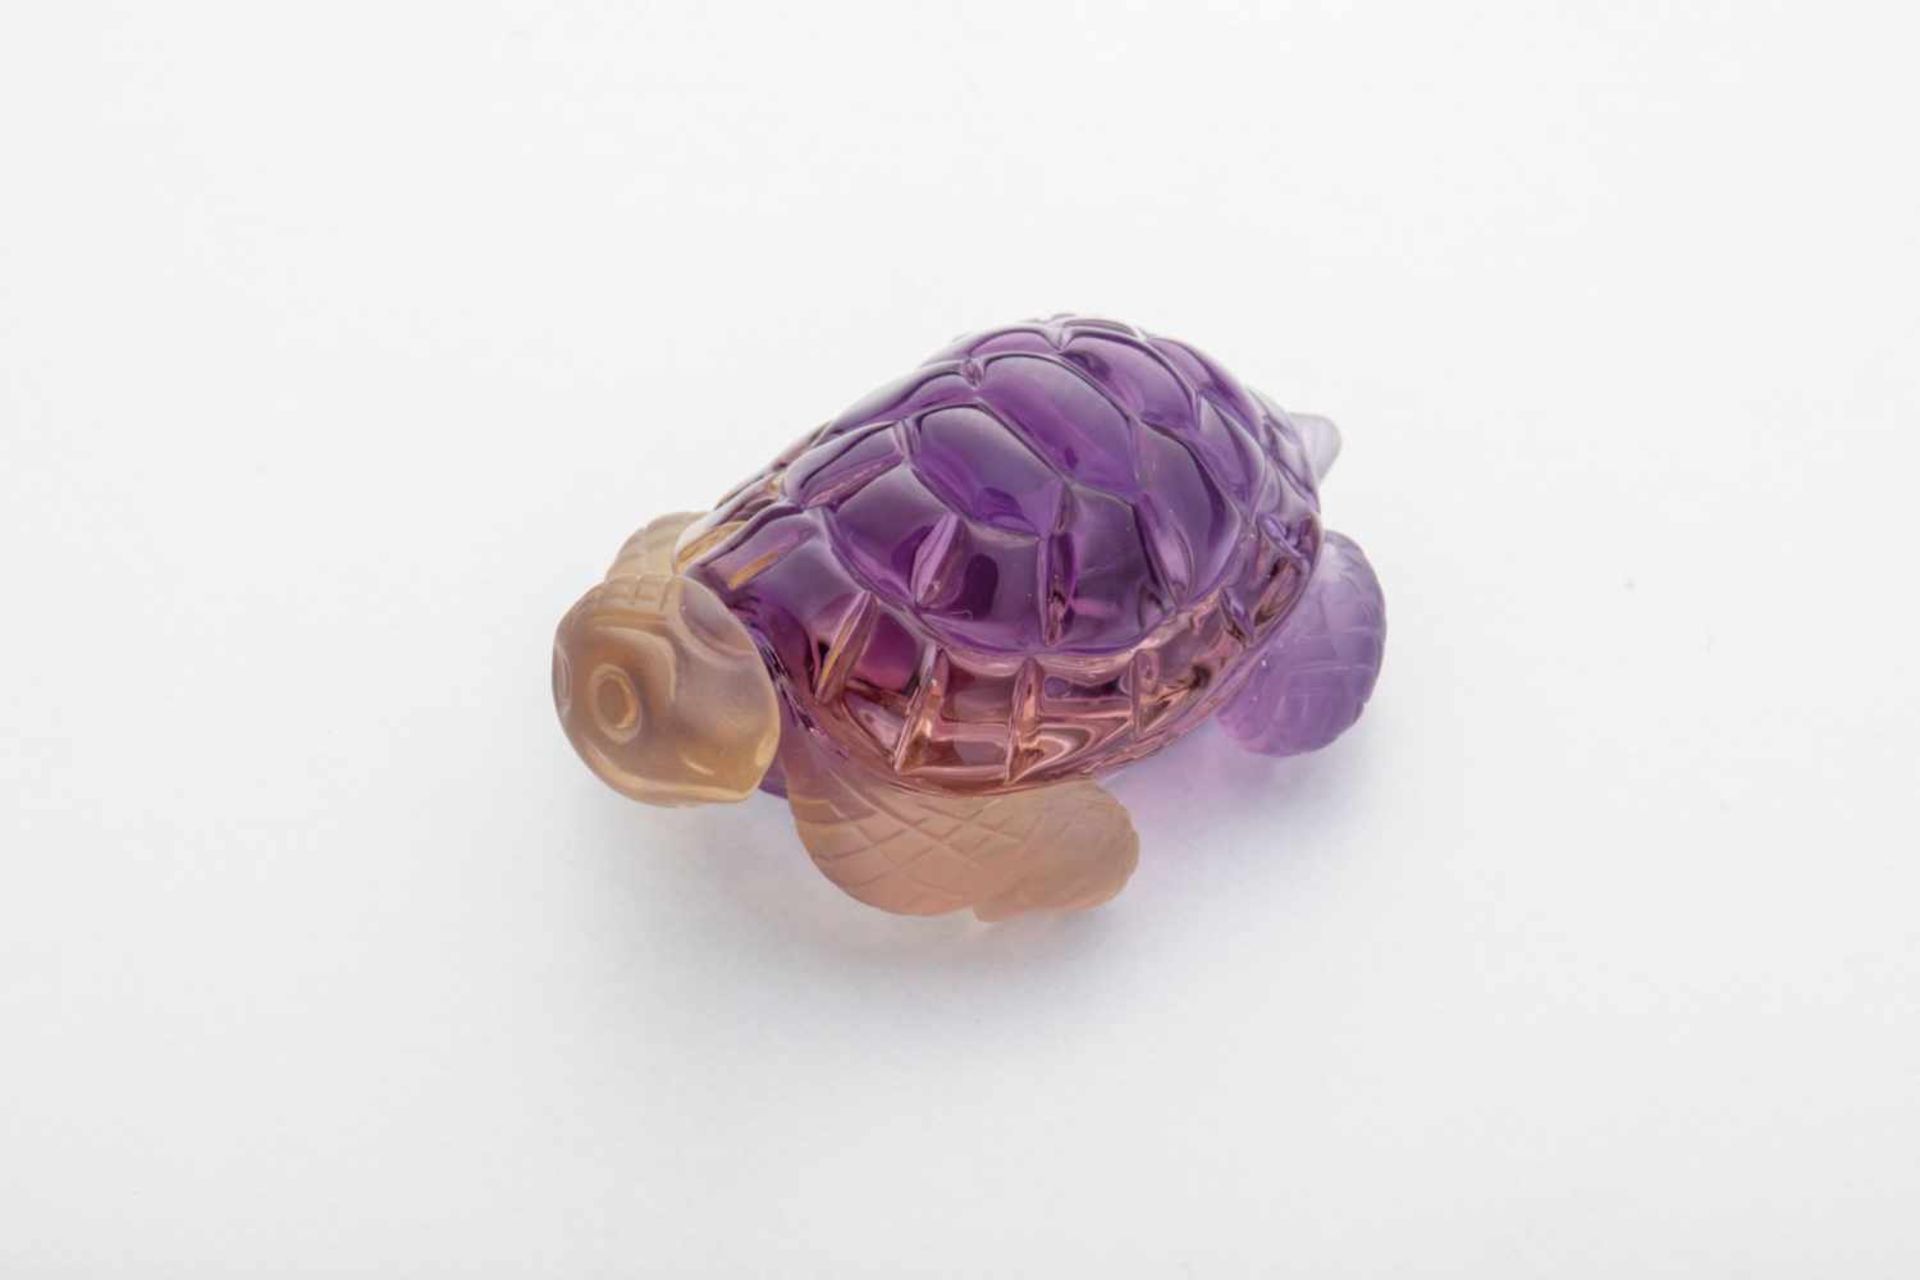 Schildkröte aus AmetrinVollplastische Darstellung einer Schildkröte in sehr feiner Gravurarbeit